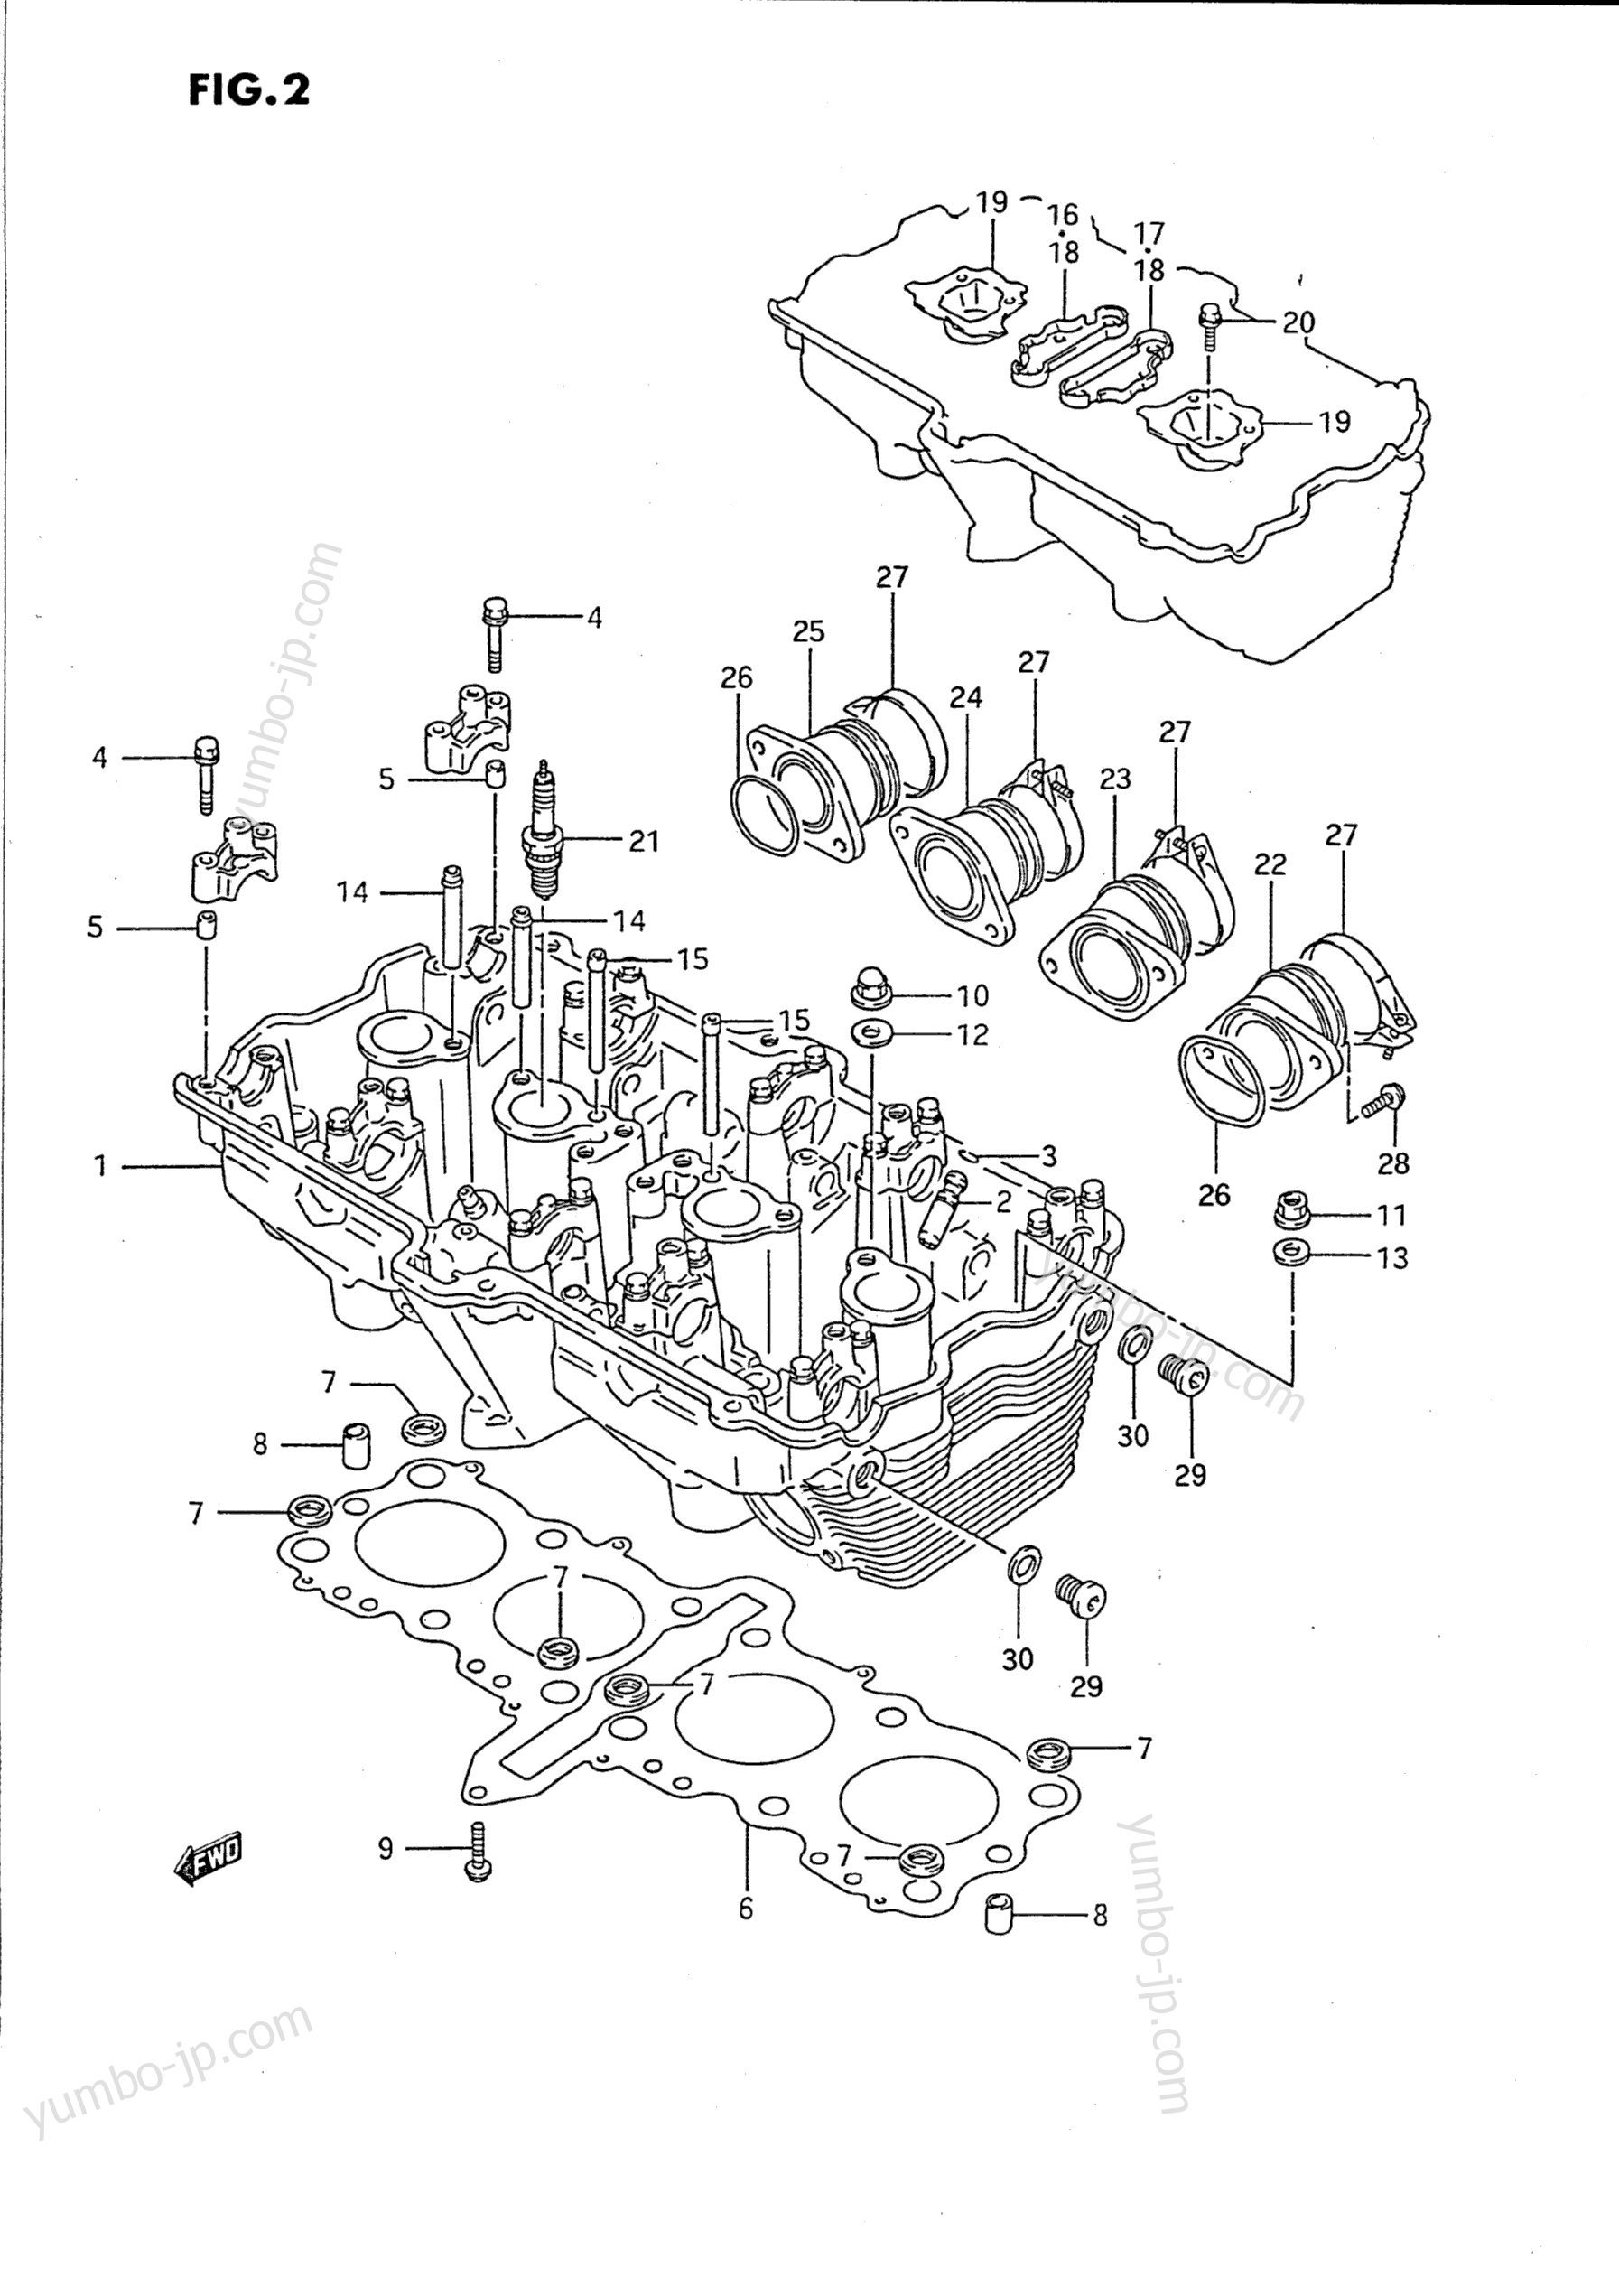 Головка блока цилиндров для мотоциклов SUZUKI Katana (GSX750F) 1989 г.